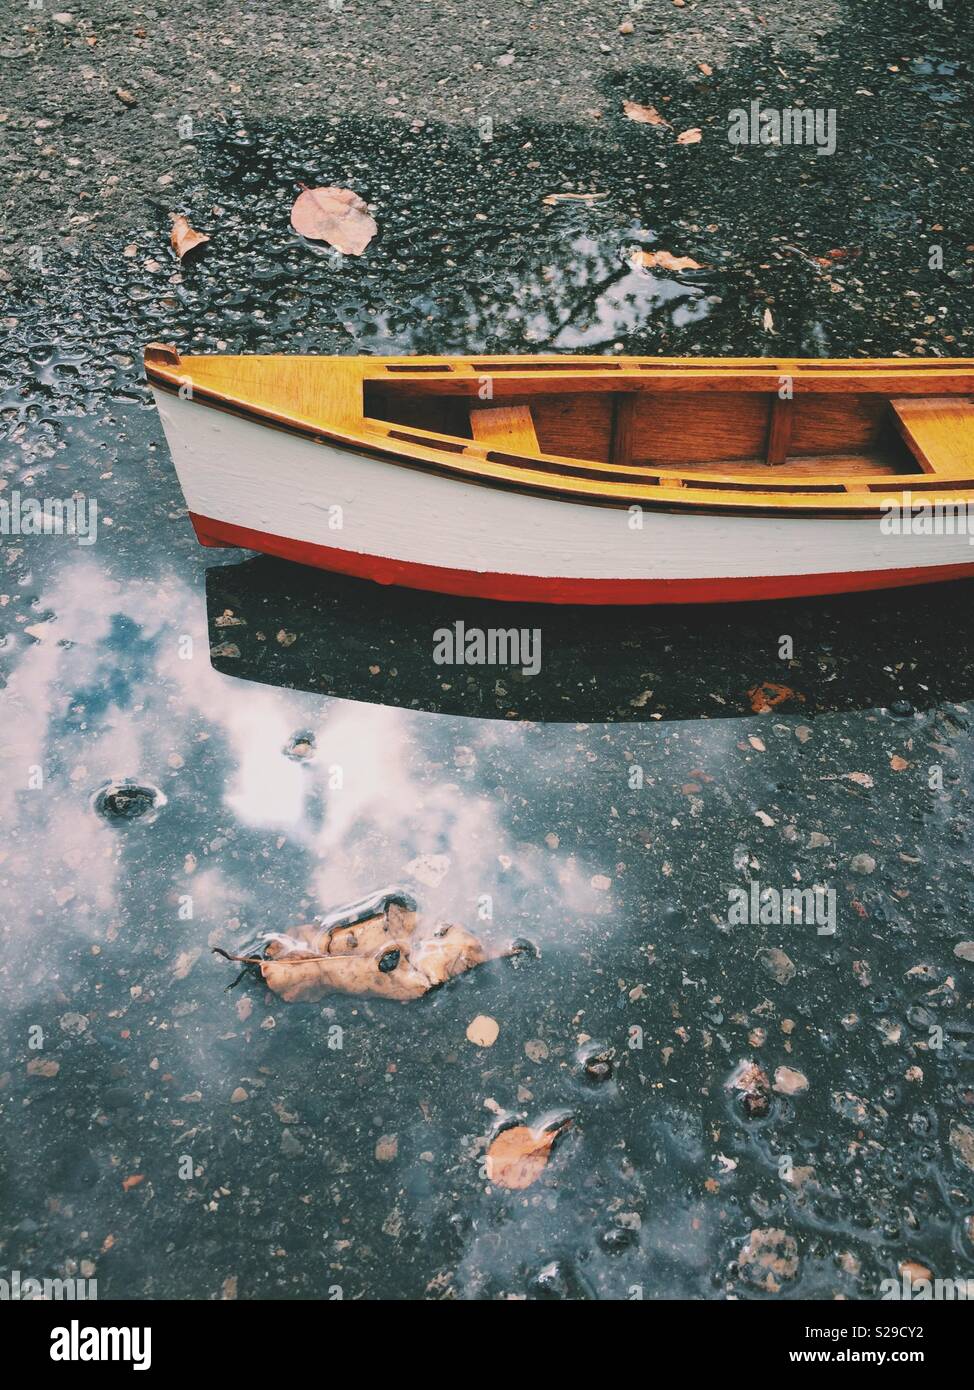 Giocattolo di legno barca a remi galleggiante nella pozzanghera con la riflessione. Foto Stock